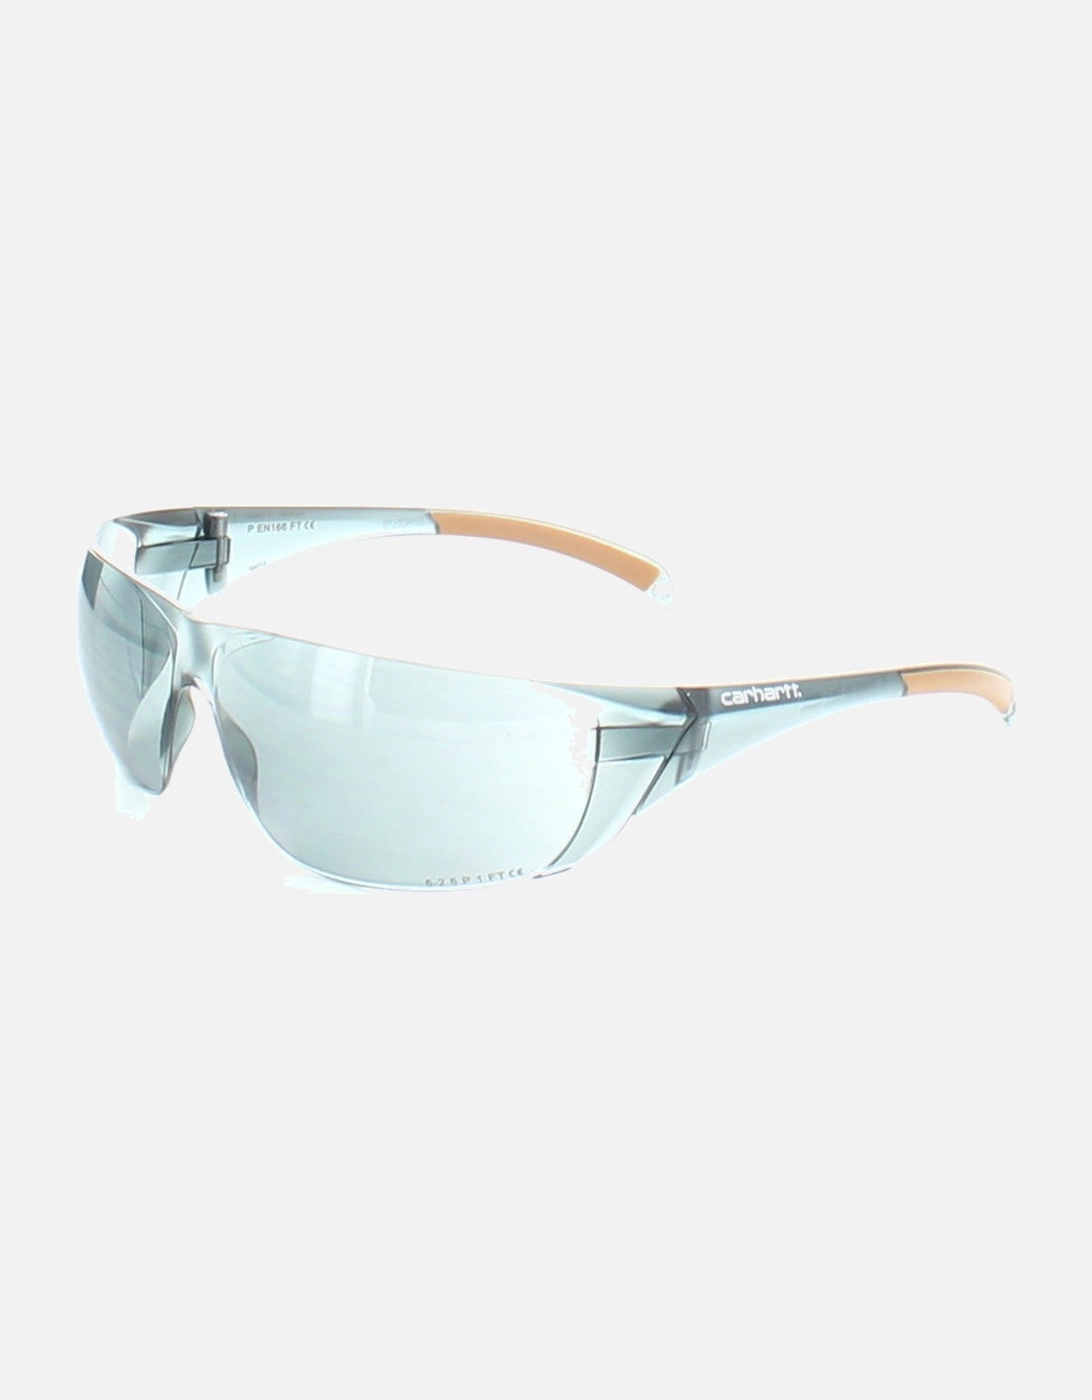 Carhartt Mens Billings Lightweight Frameless Safety Glasses, 9 of 8